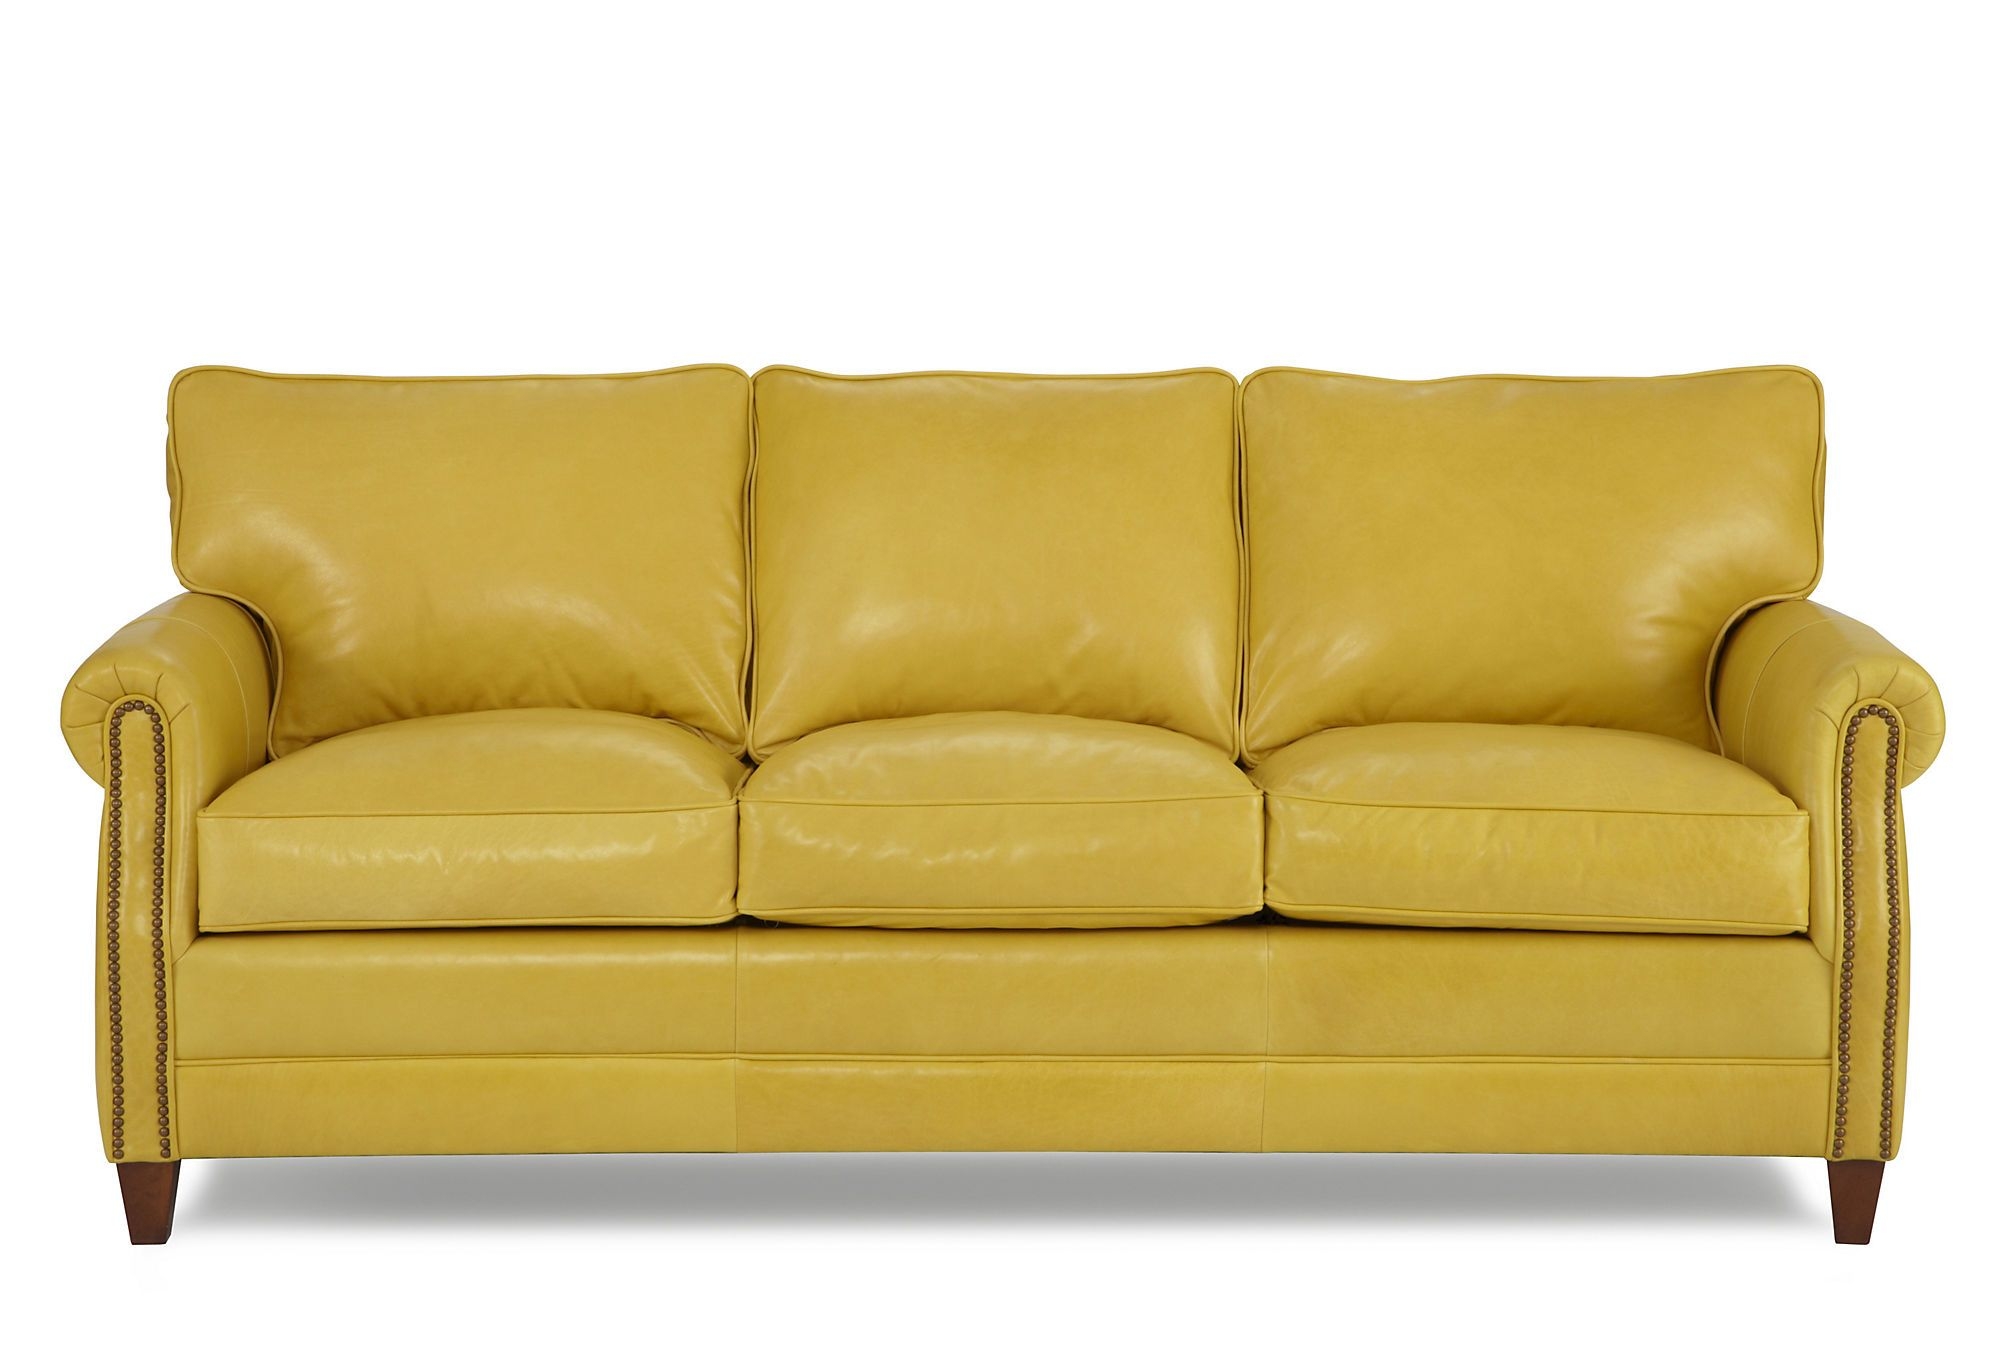 Yellow leather sofas 1